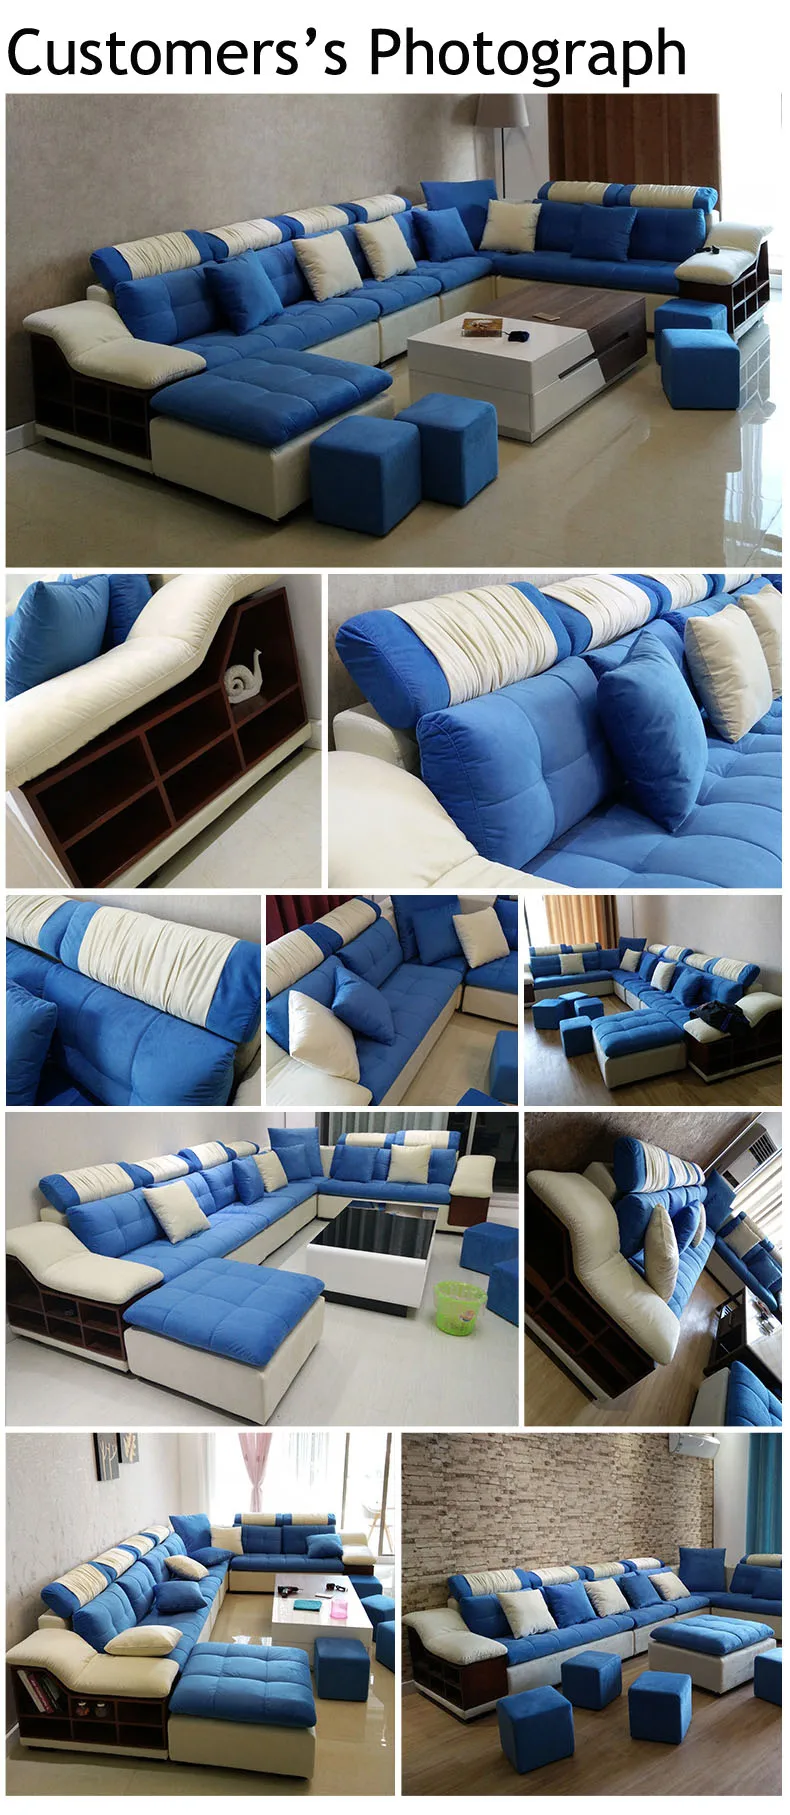 Arab Desain Rumah Ruang Tamu 5 7 8 9 10 11 12 Seater Sofa Set